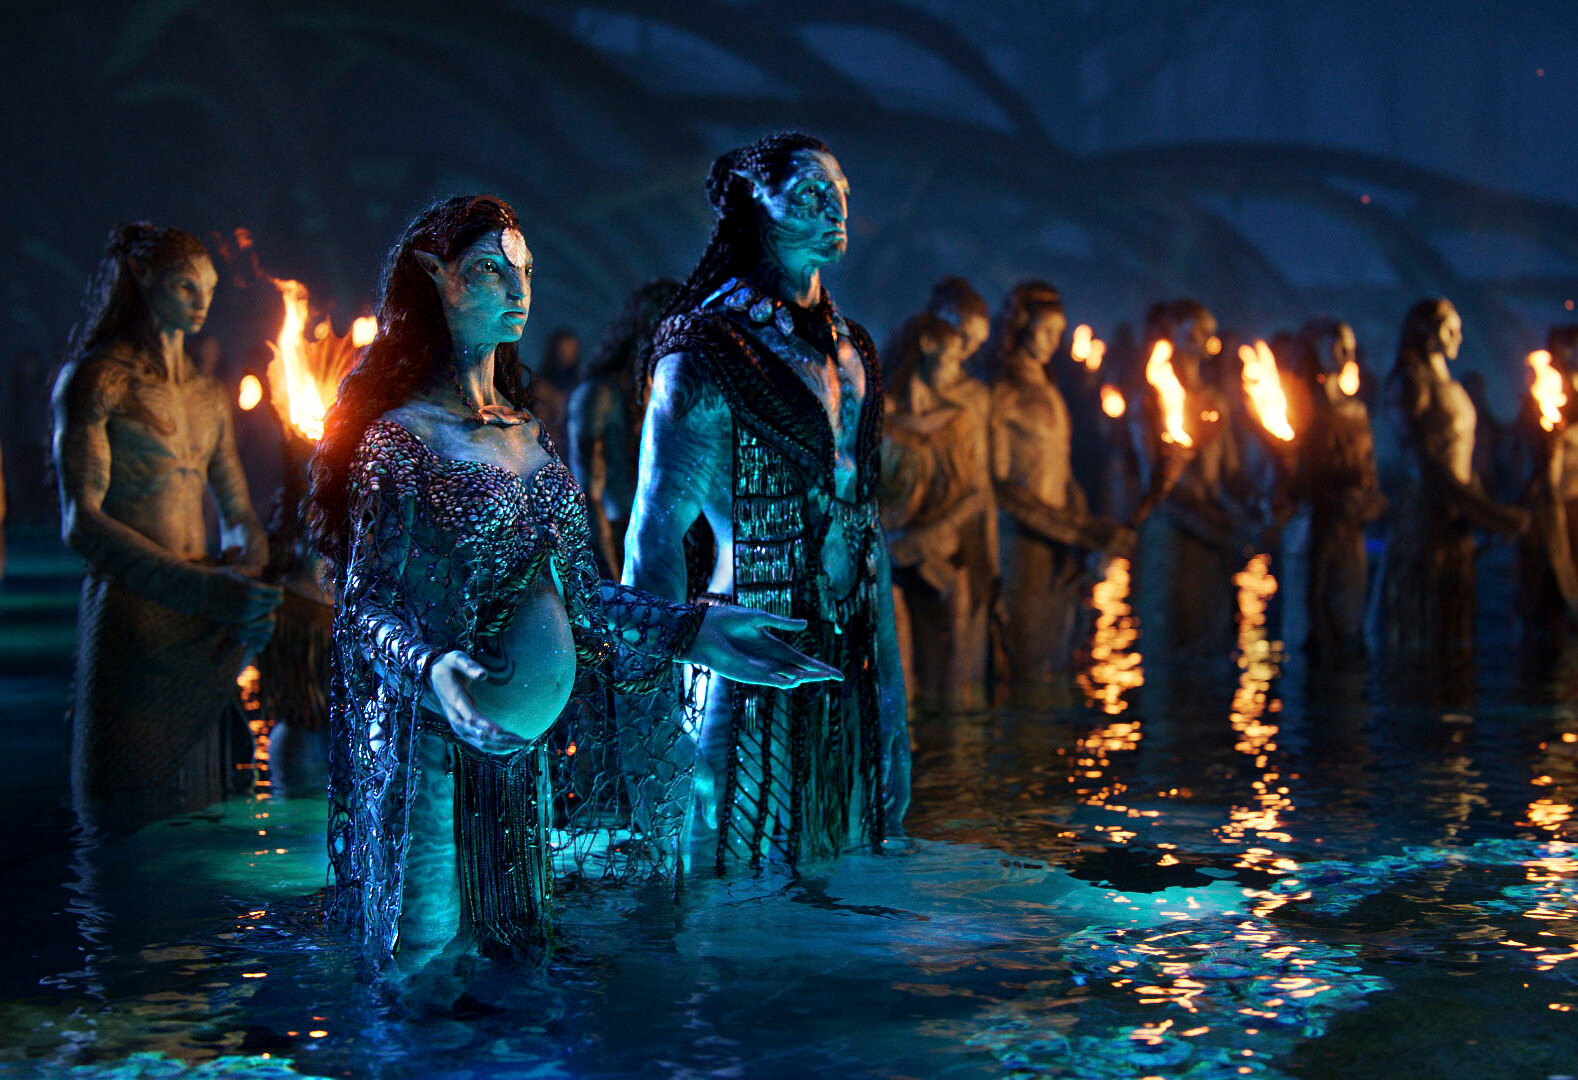 Ra rạp xem gì tháng 12  Siêu phẩm Avatar 2 sẽ khiến bạn đứng ngồi không  yên  Tin tức Lịch chiếu Mua vé xem phim Review phim